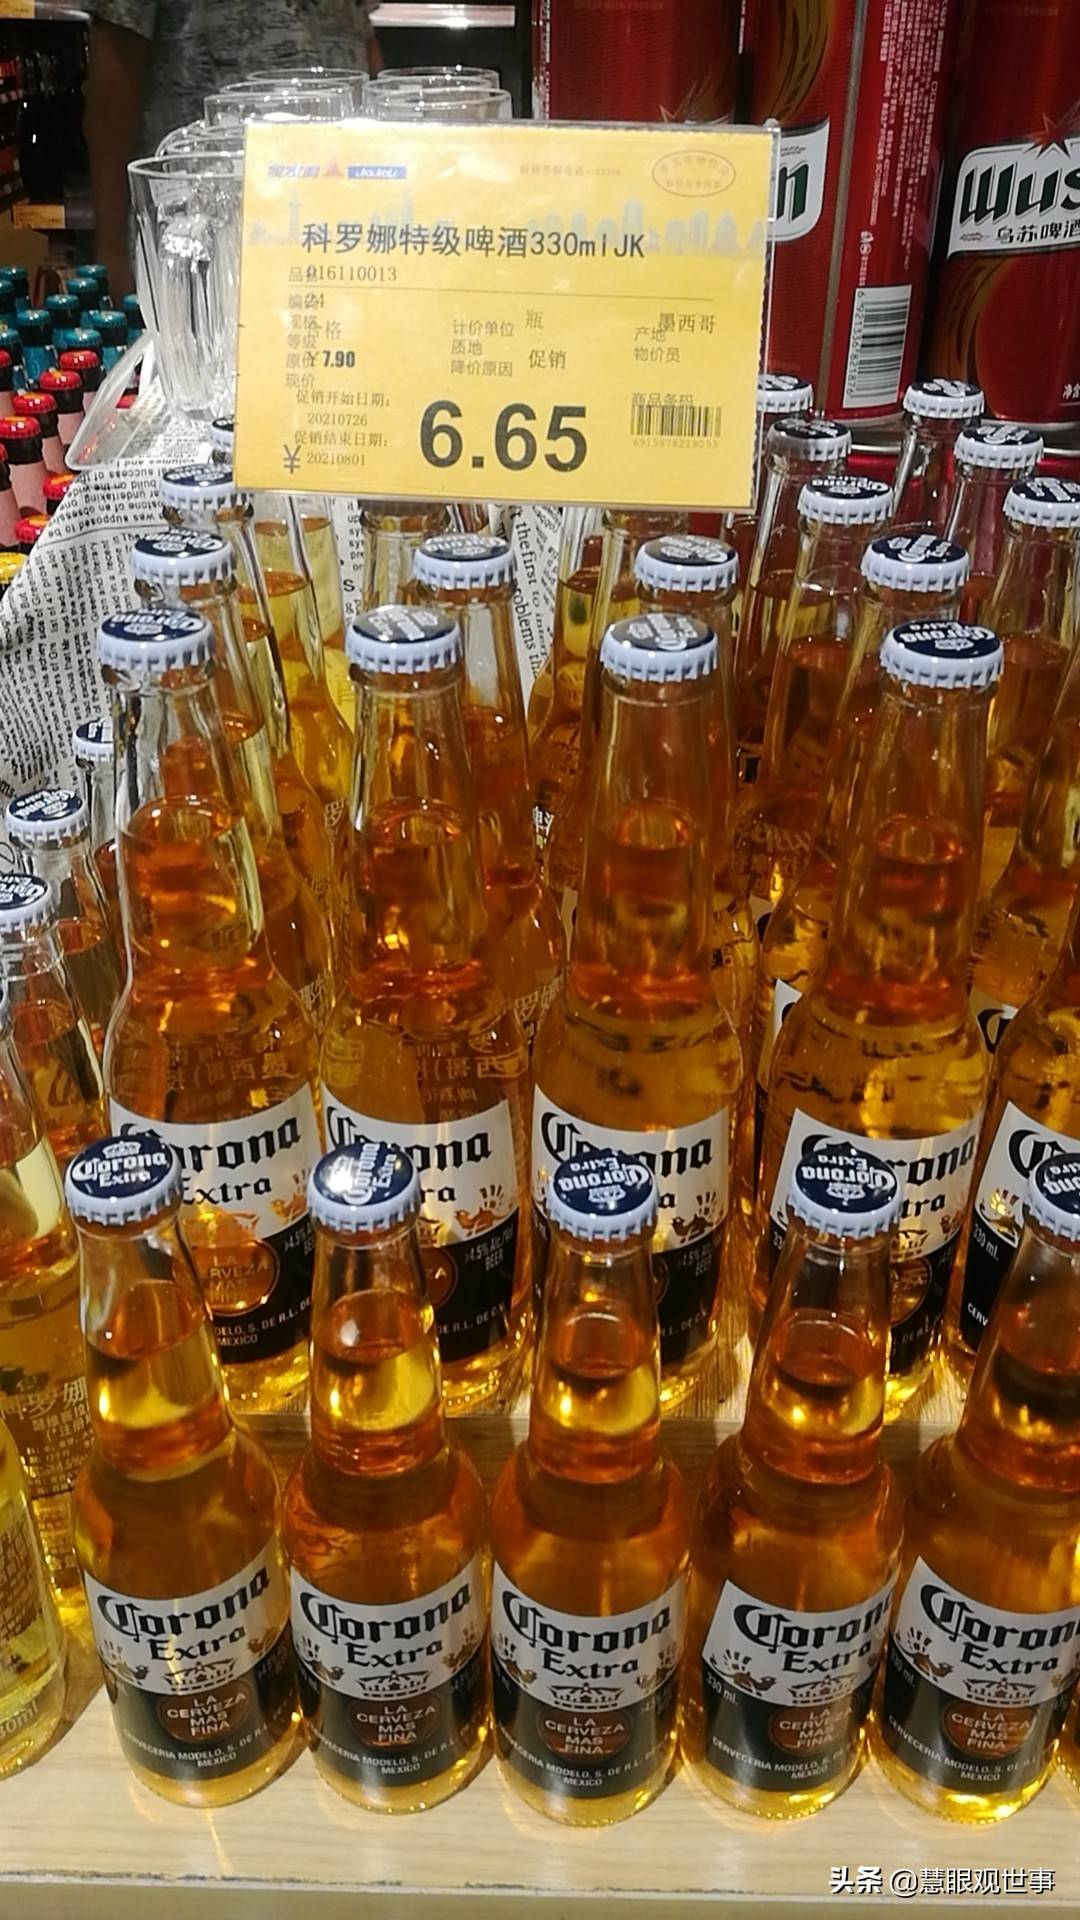 孝义家家利超市的啤酒品种多，价格便宜